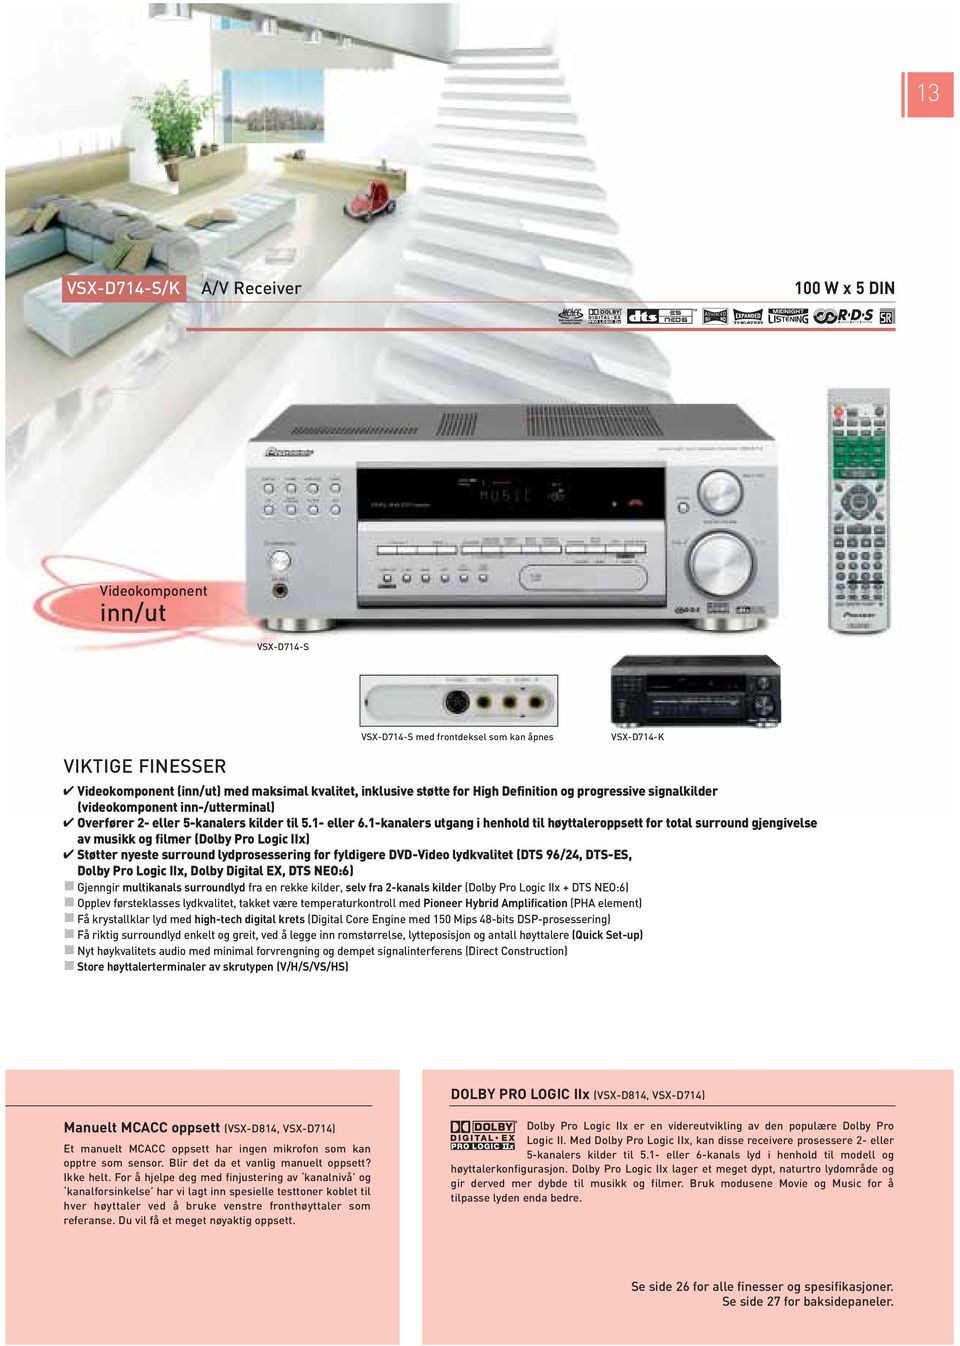 -kanalers utgang i henhold til høyttaleroppsett for total surround gjengivelse av musikk og filmer (Dolby Pro Logic IIx) Støtter nyeste surround lydprosessering for fyldigere DVD-Video lydkvalitet